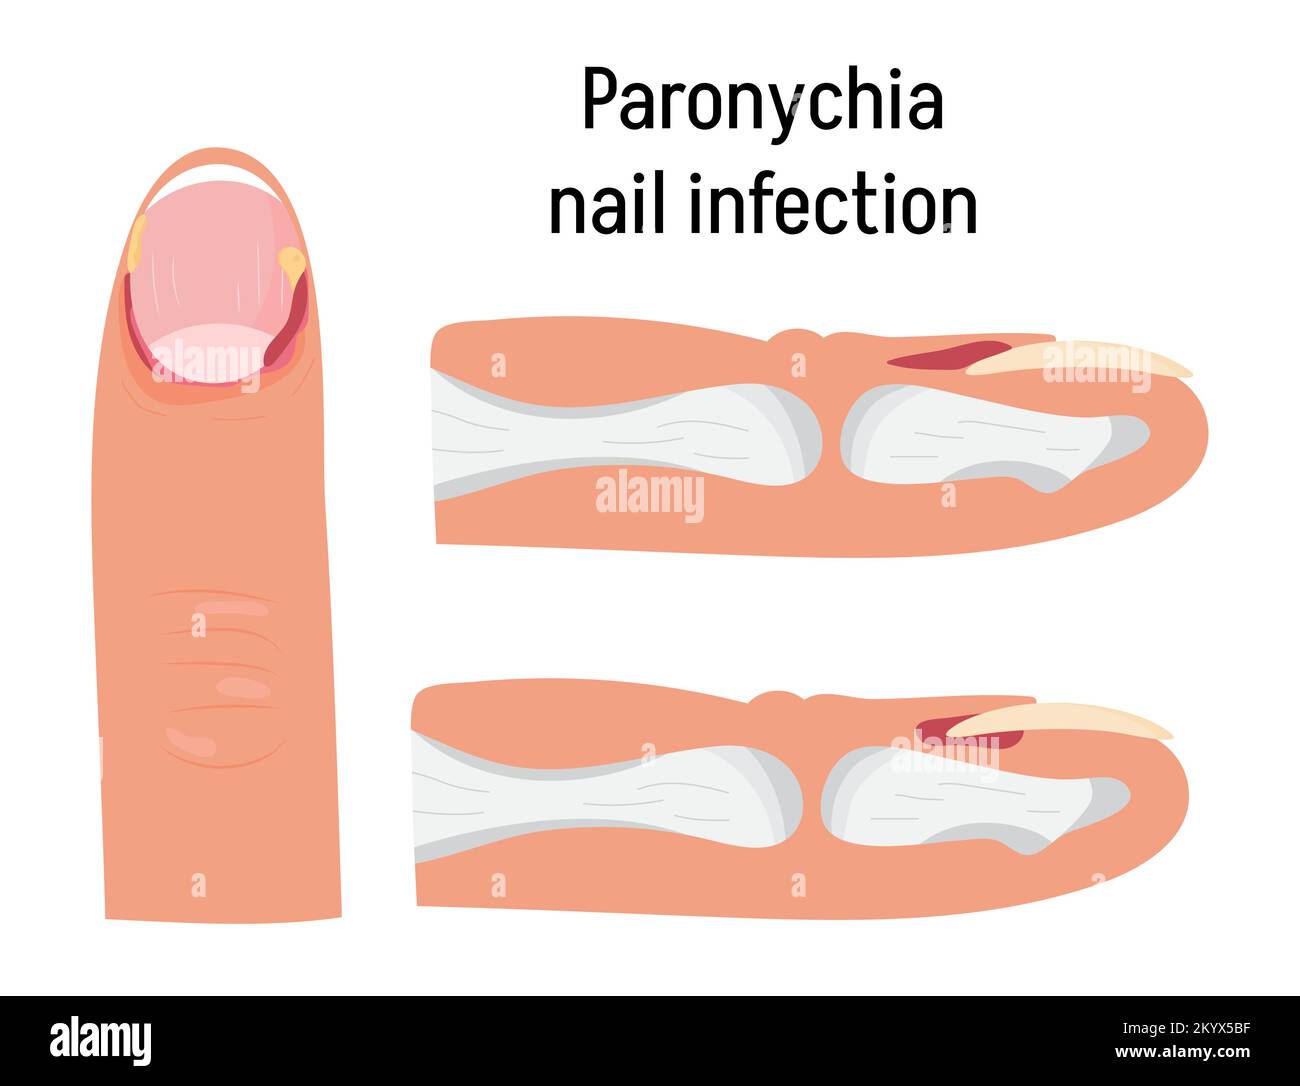 Paronychia konzepnt Vektor für medizinischen Blog, App, Banner. Nagelentzündung, die durch Trauma, Reizung oder Infektion hervorgerufen werden kann. Stock Vektor